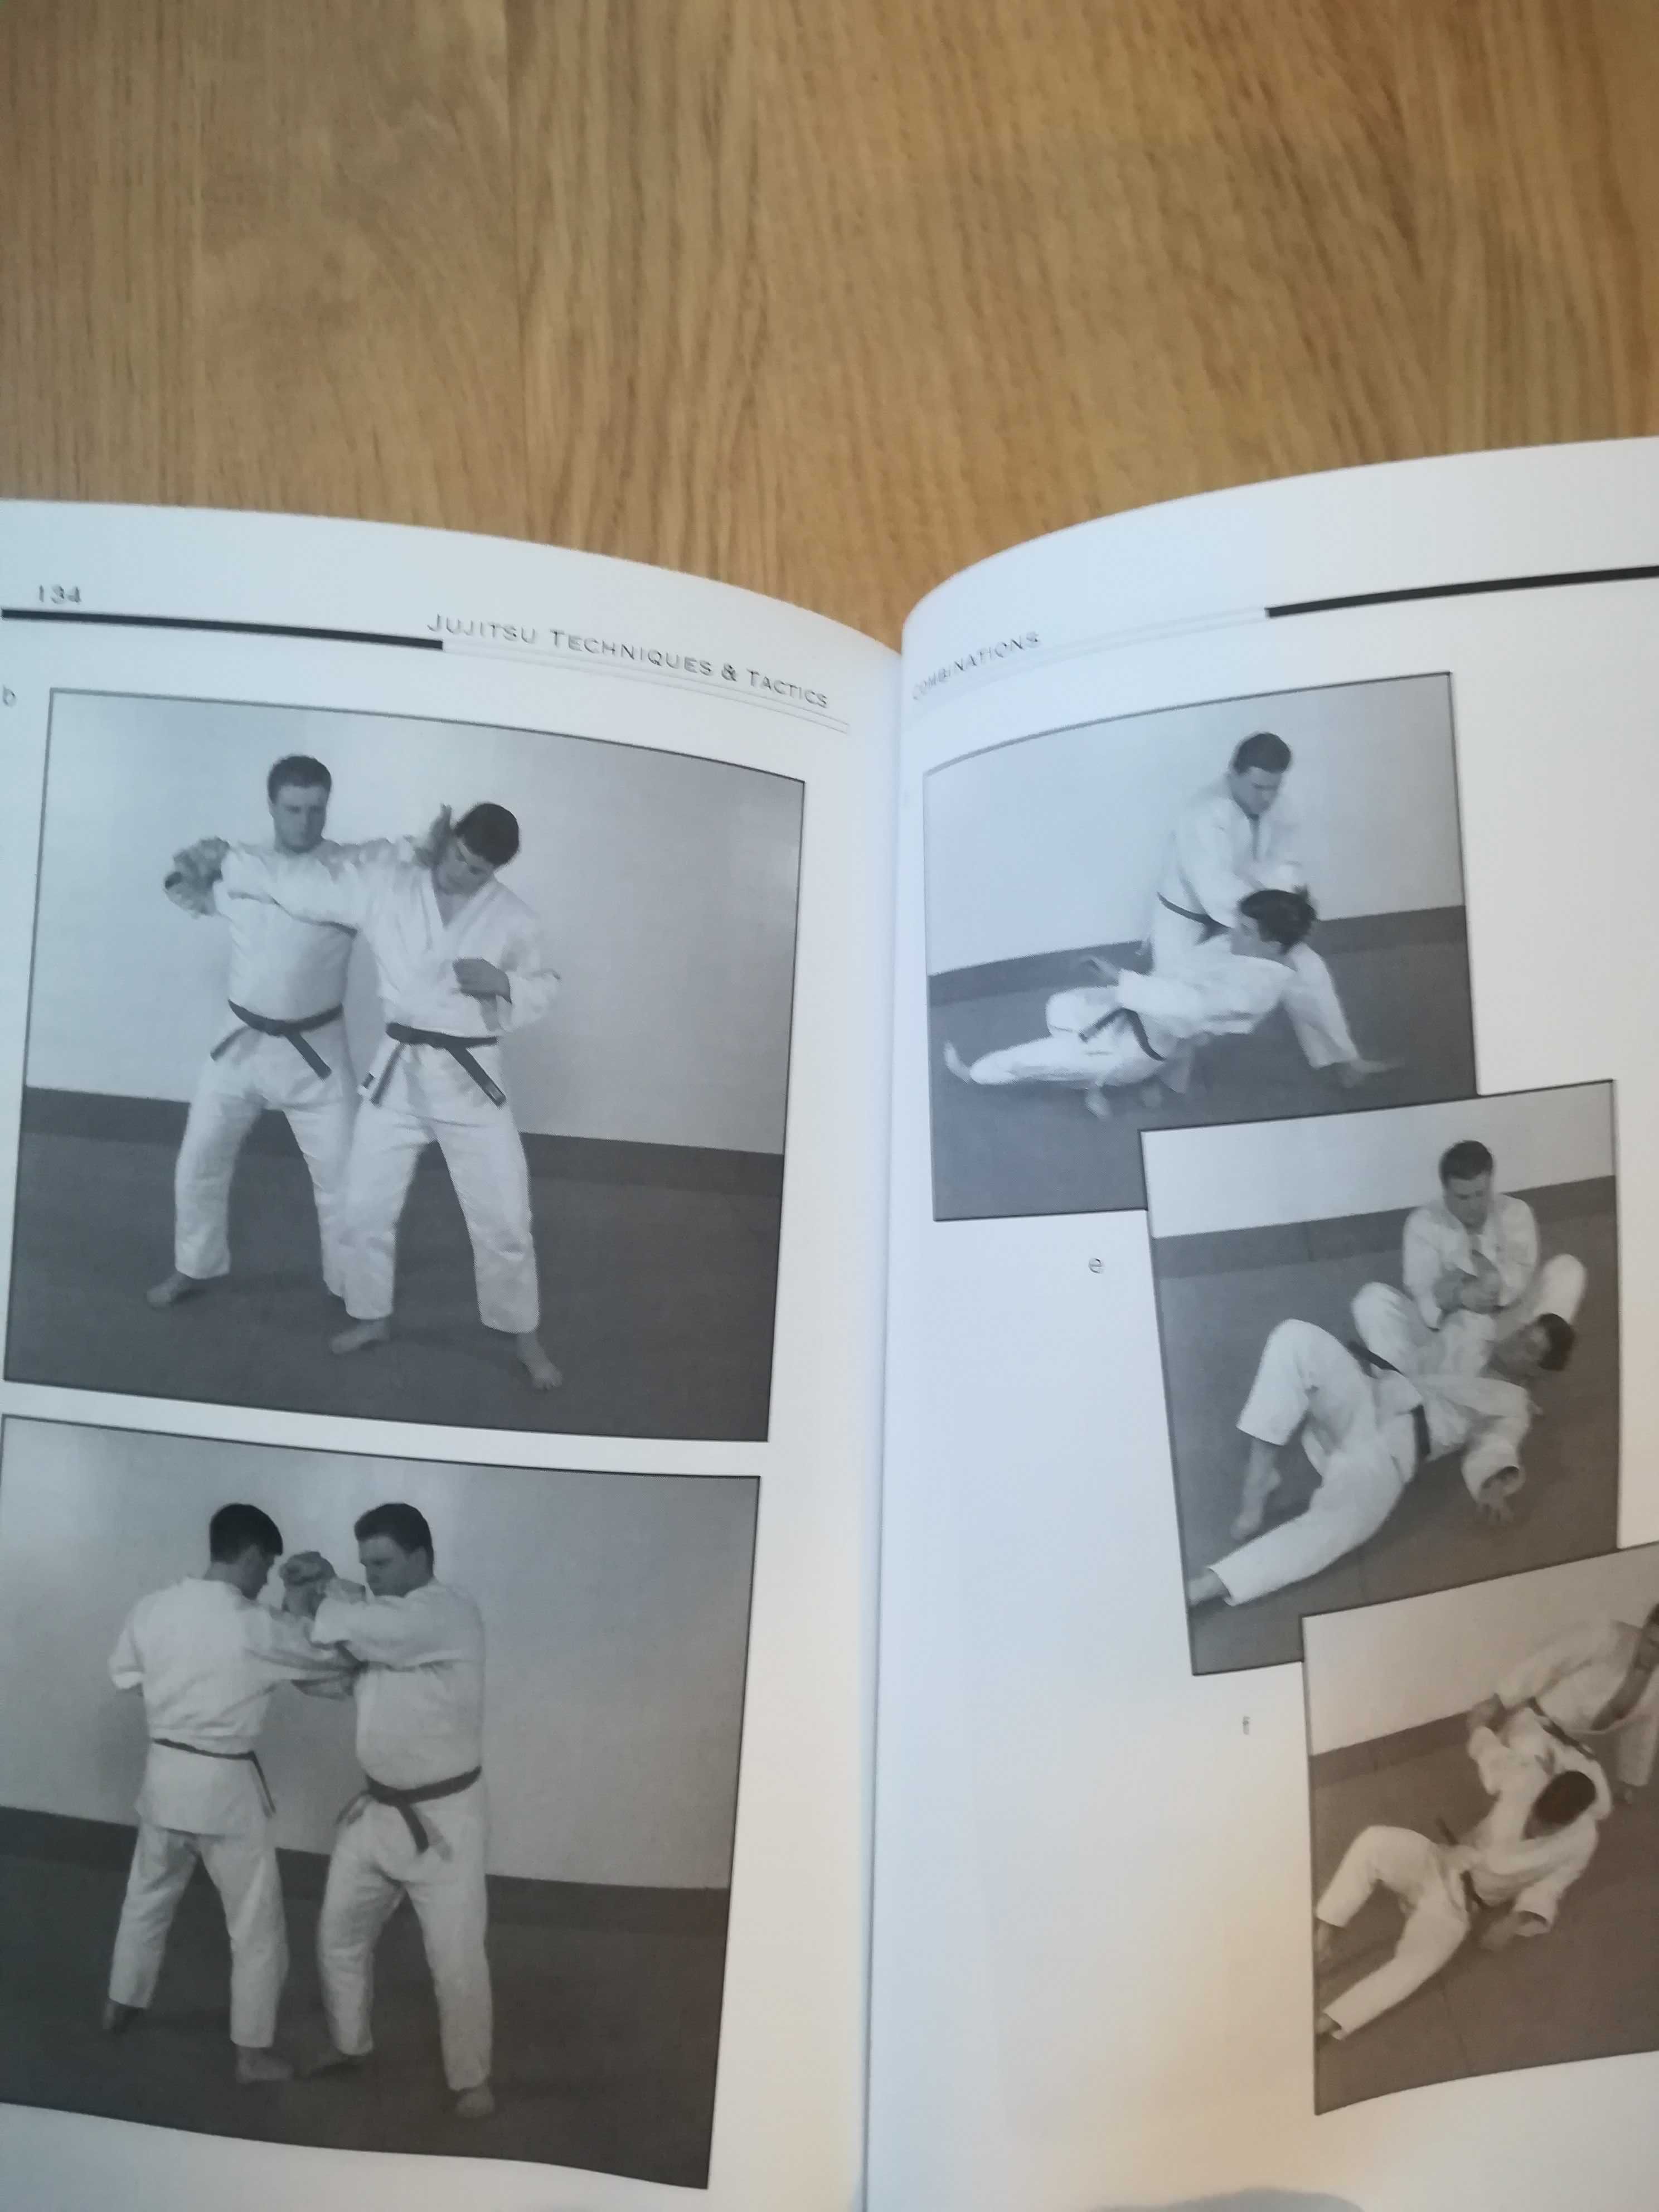 Livro Jujitsu- técnicas e táticas